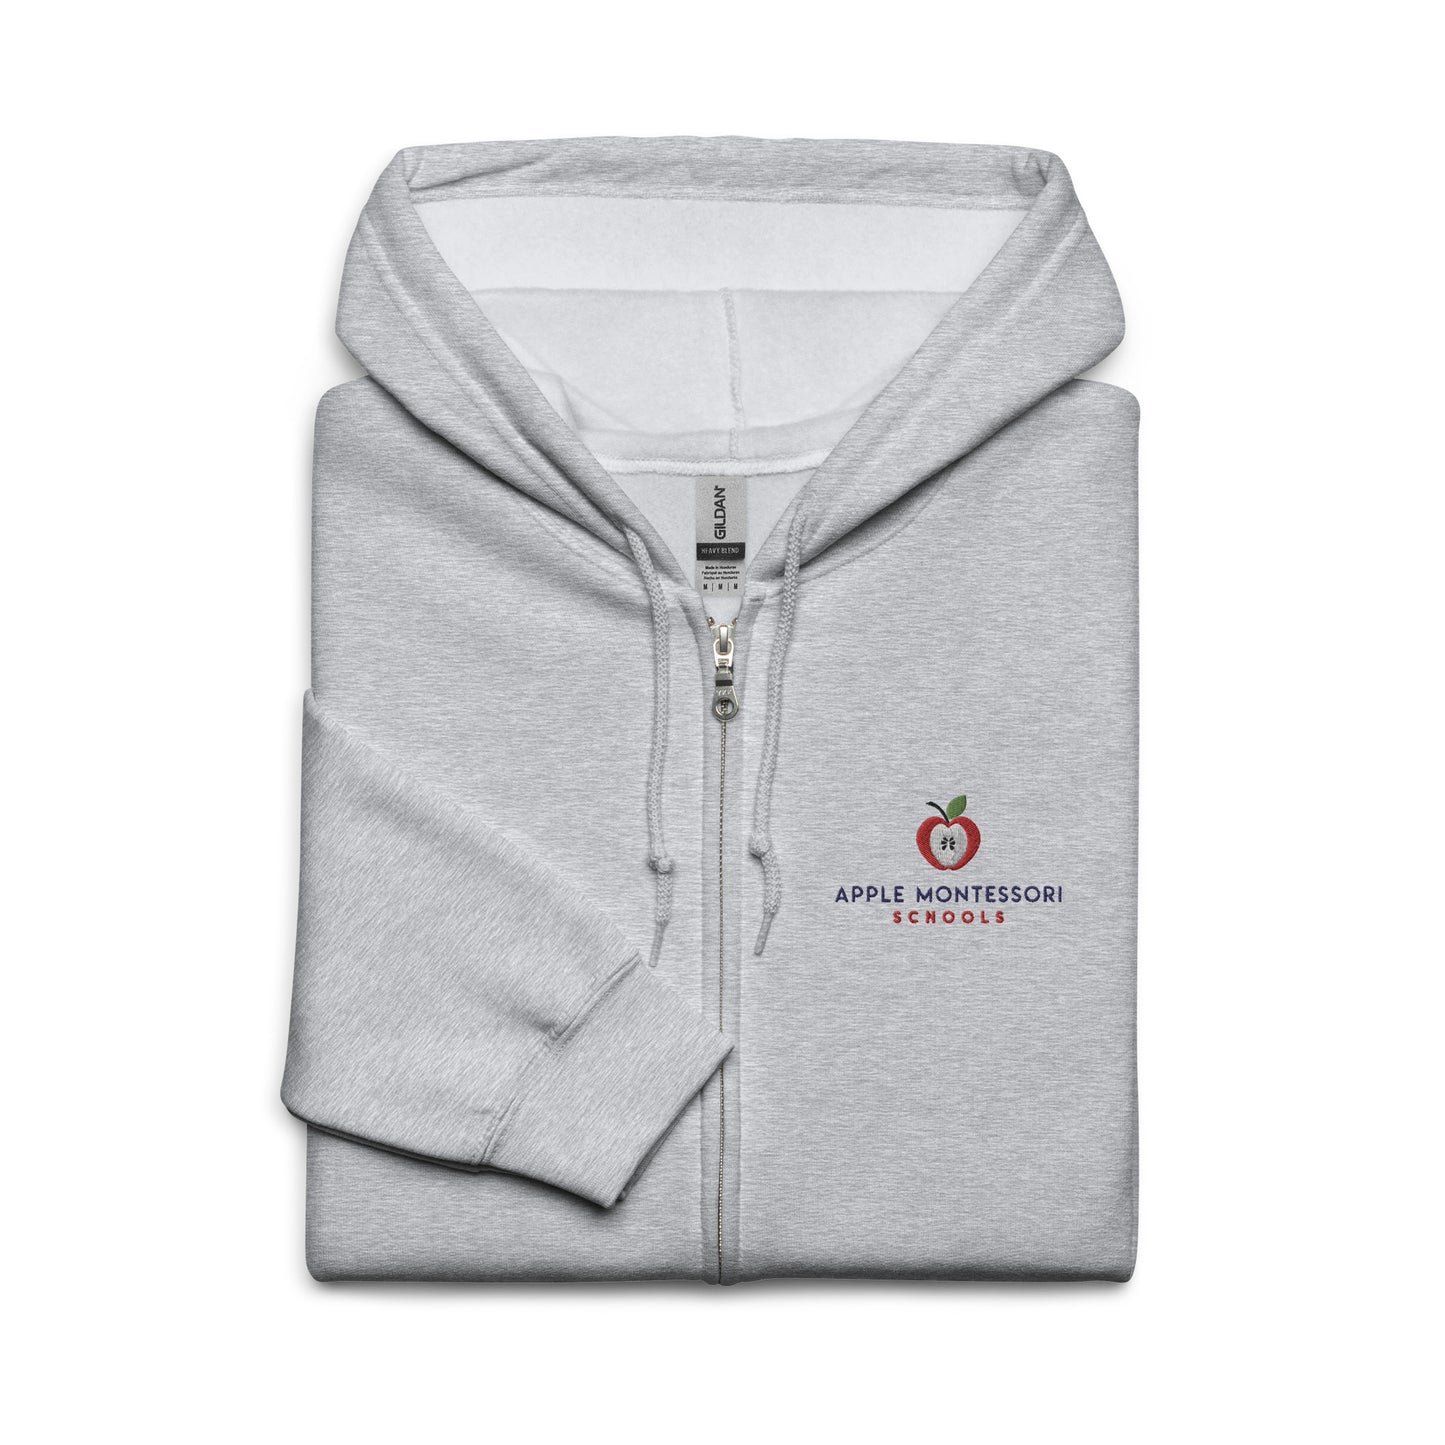 Apple Montessori Schools Unisex heavy blend zip hoodie